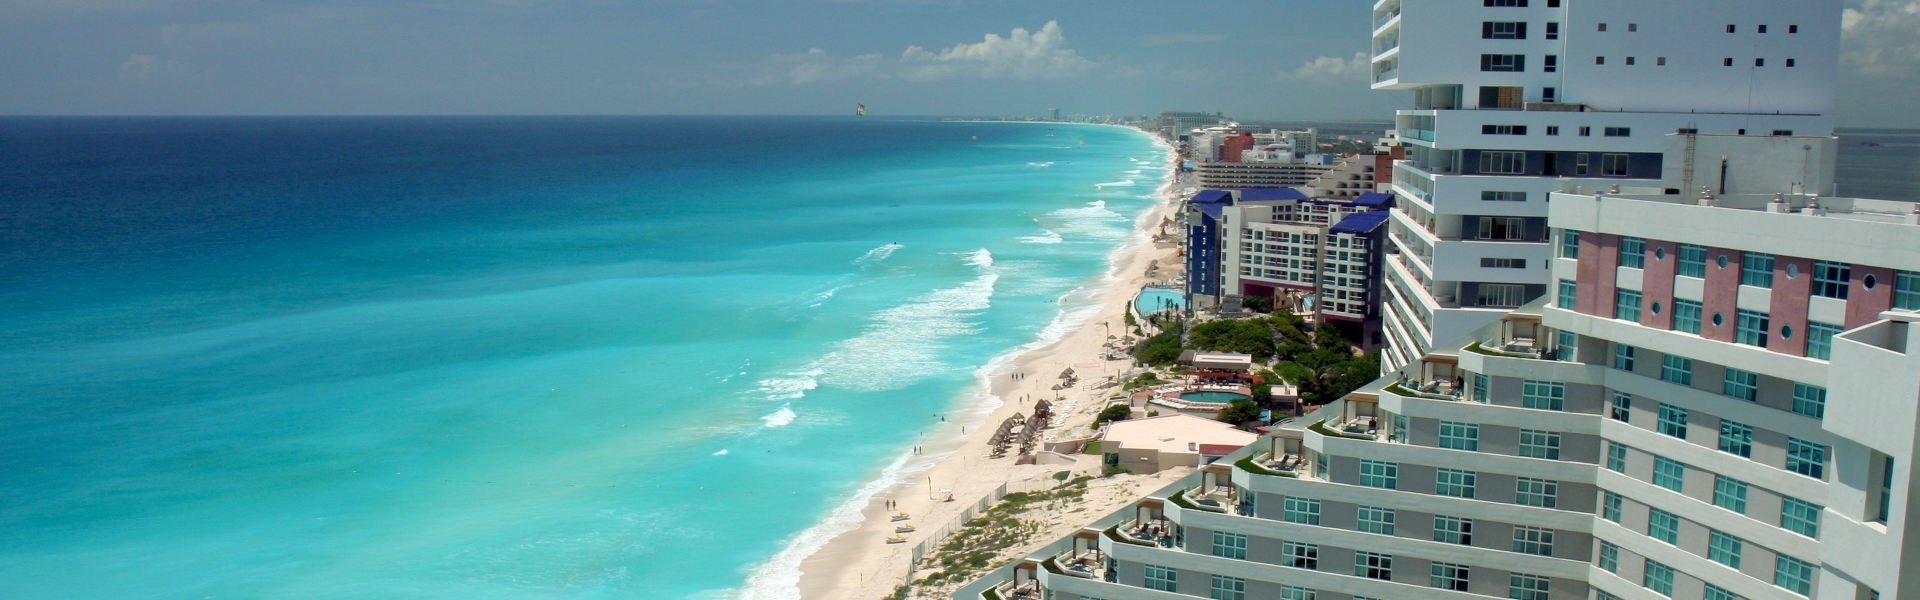  Hotel Faranda Imperial Laguna Cancún Cancun